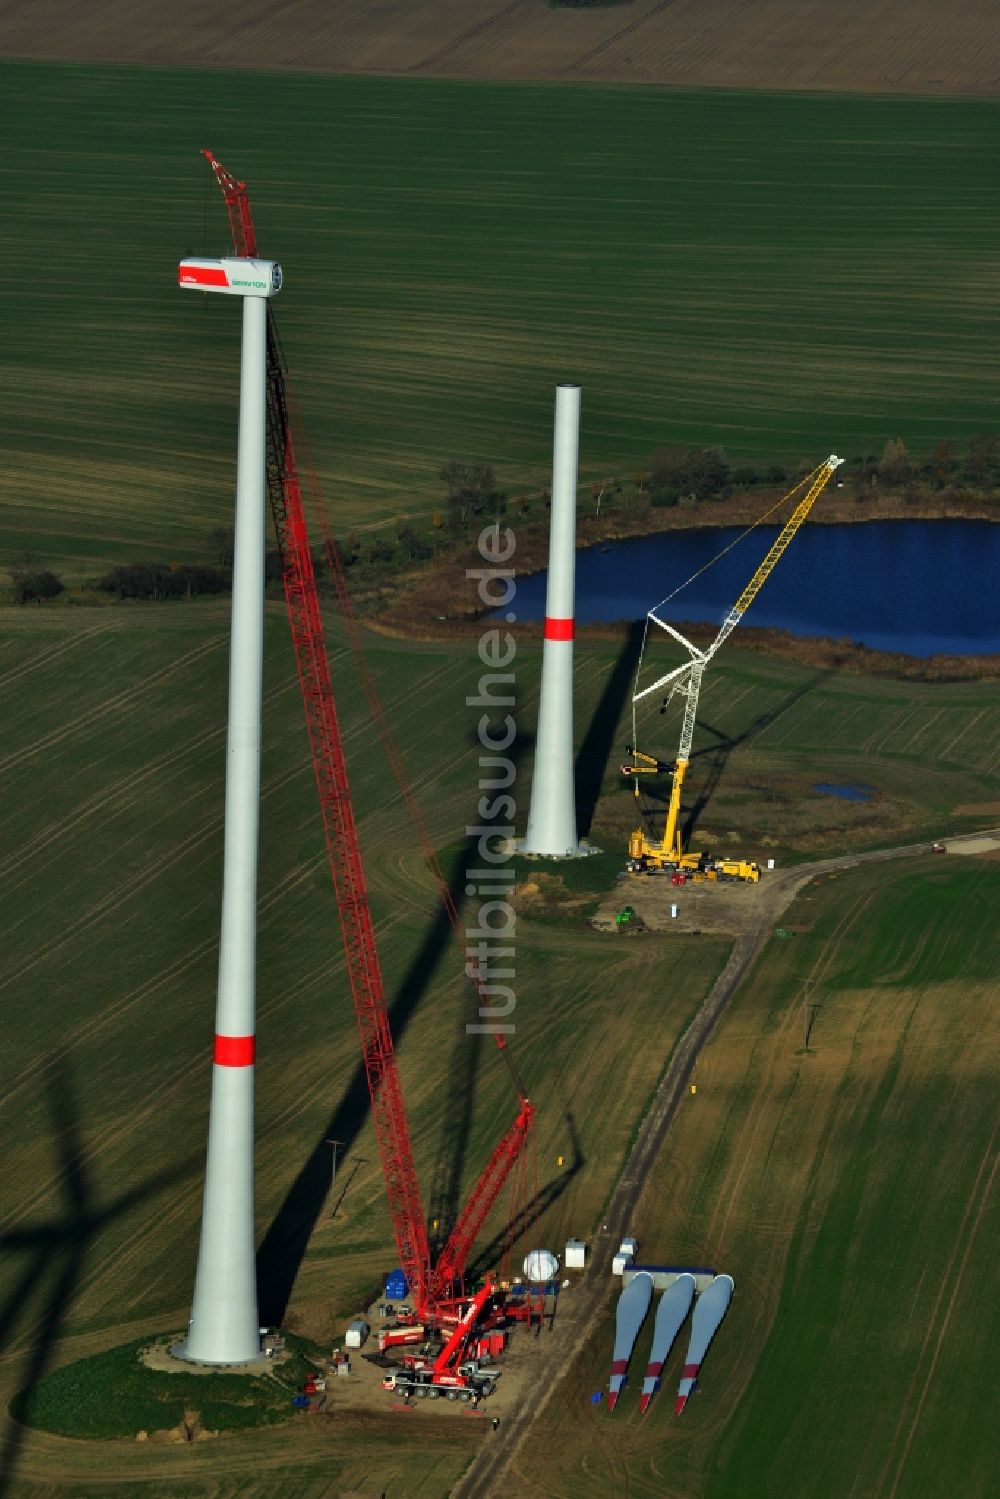 Prenzlau von oben - Bau eines Windrades bei Prenzlau im Bundesland Brandenburg